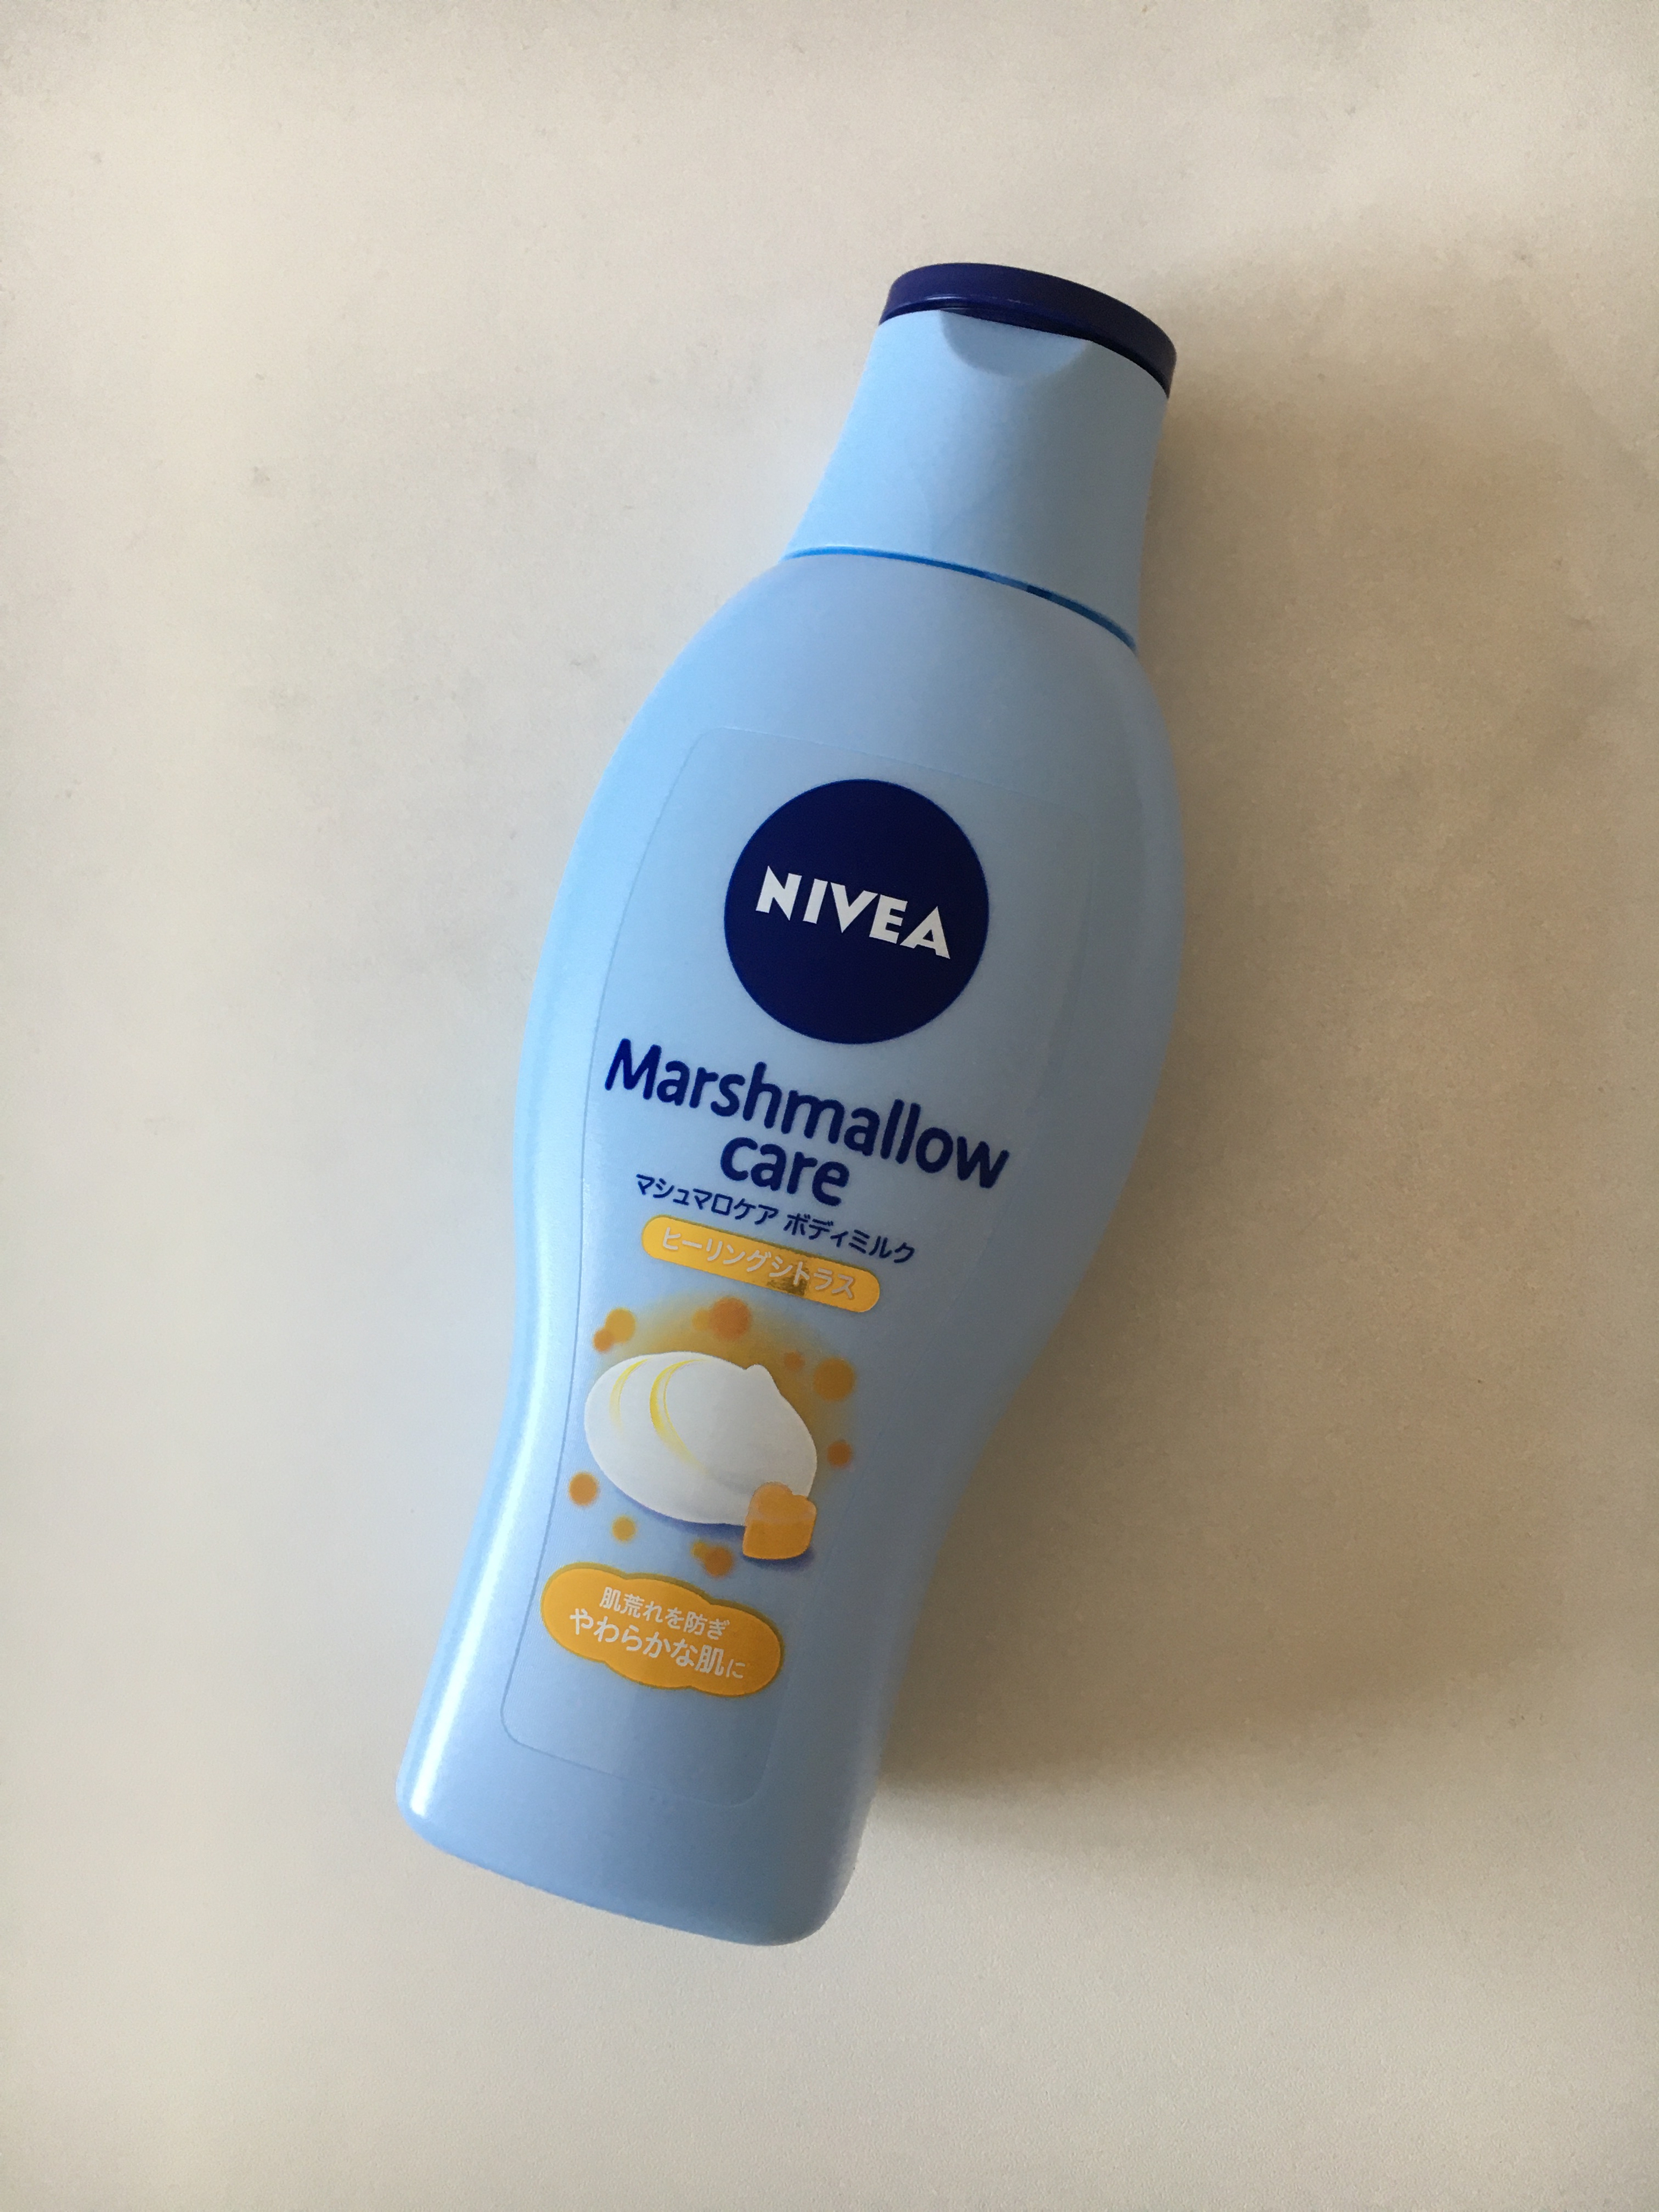 NIVEA(ニベア)マシュマロケア ボディミルクを使ったMiaiさんのクチコミ画像1